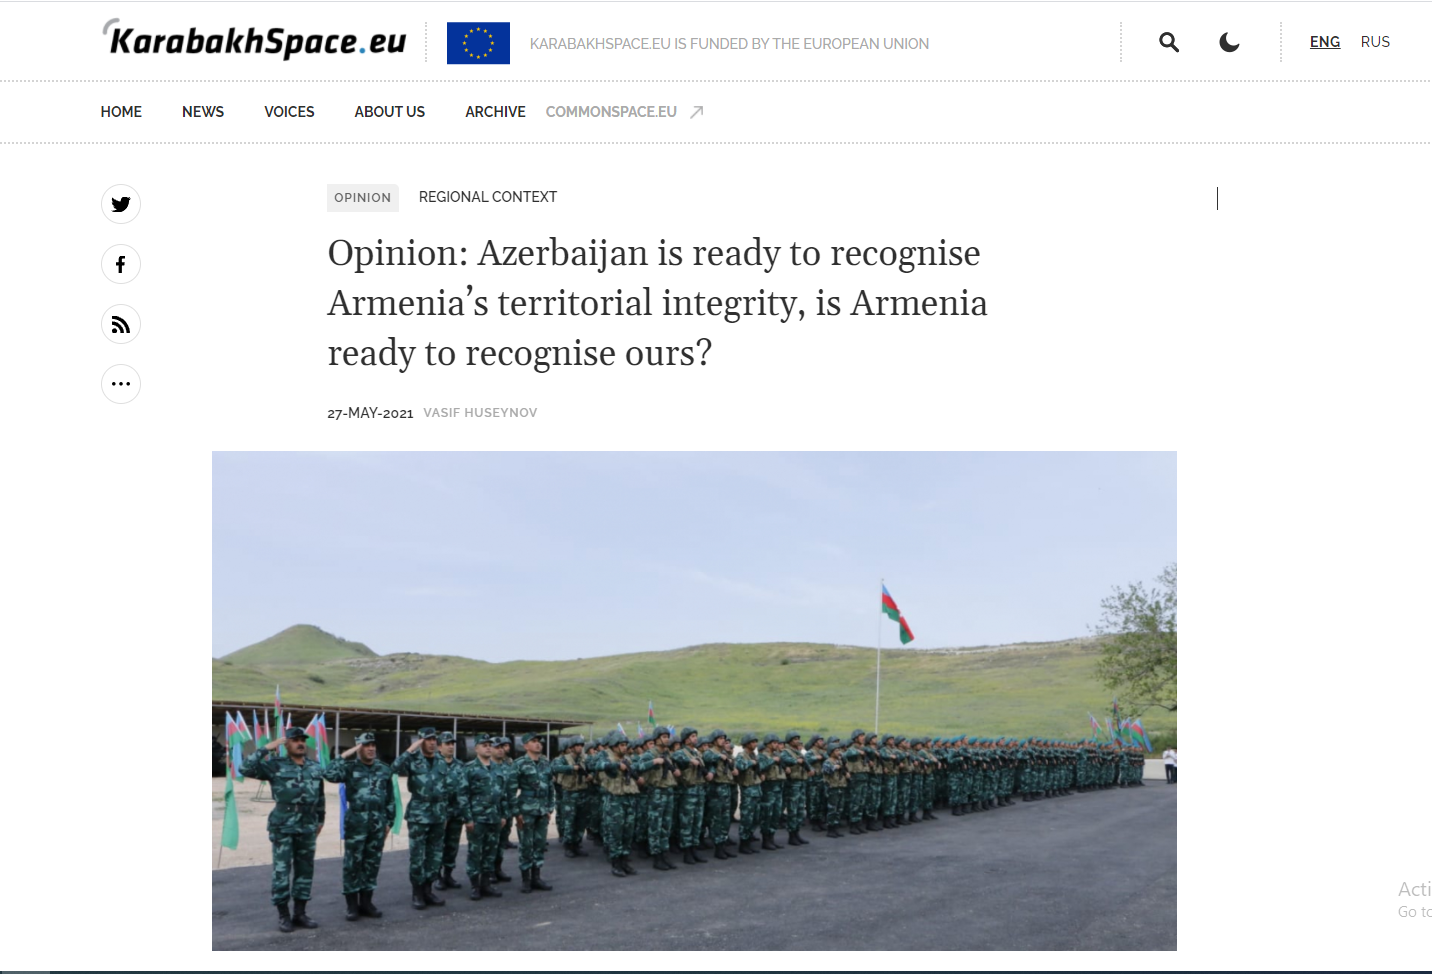 Azərbaycan Ermənistanın ərazi bütövlüyünü tanımağa hazırdır, Ermənistan da buna hazırdırmı?